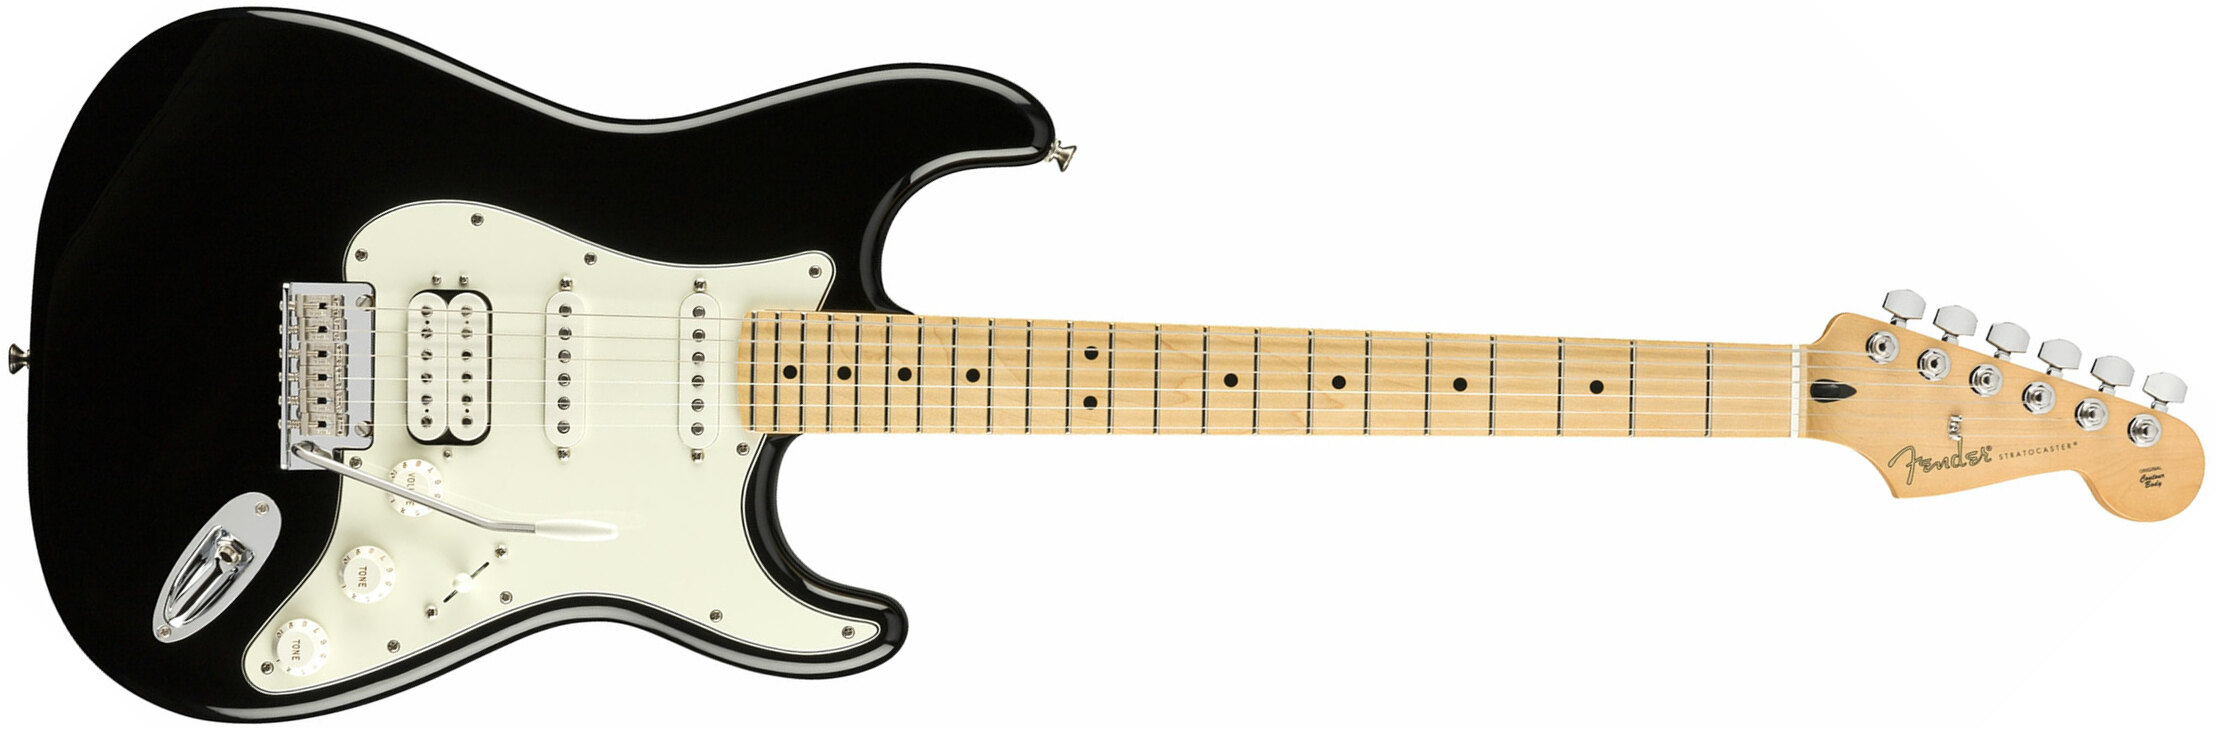 Fender Strat Player Mex Hss Mn - Black - Elektrische gitaar in Str-vorm - Main picture